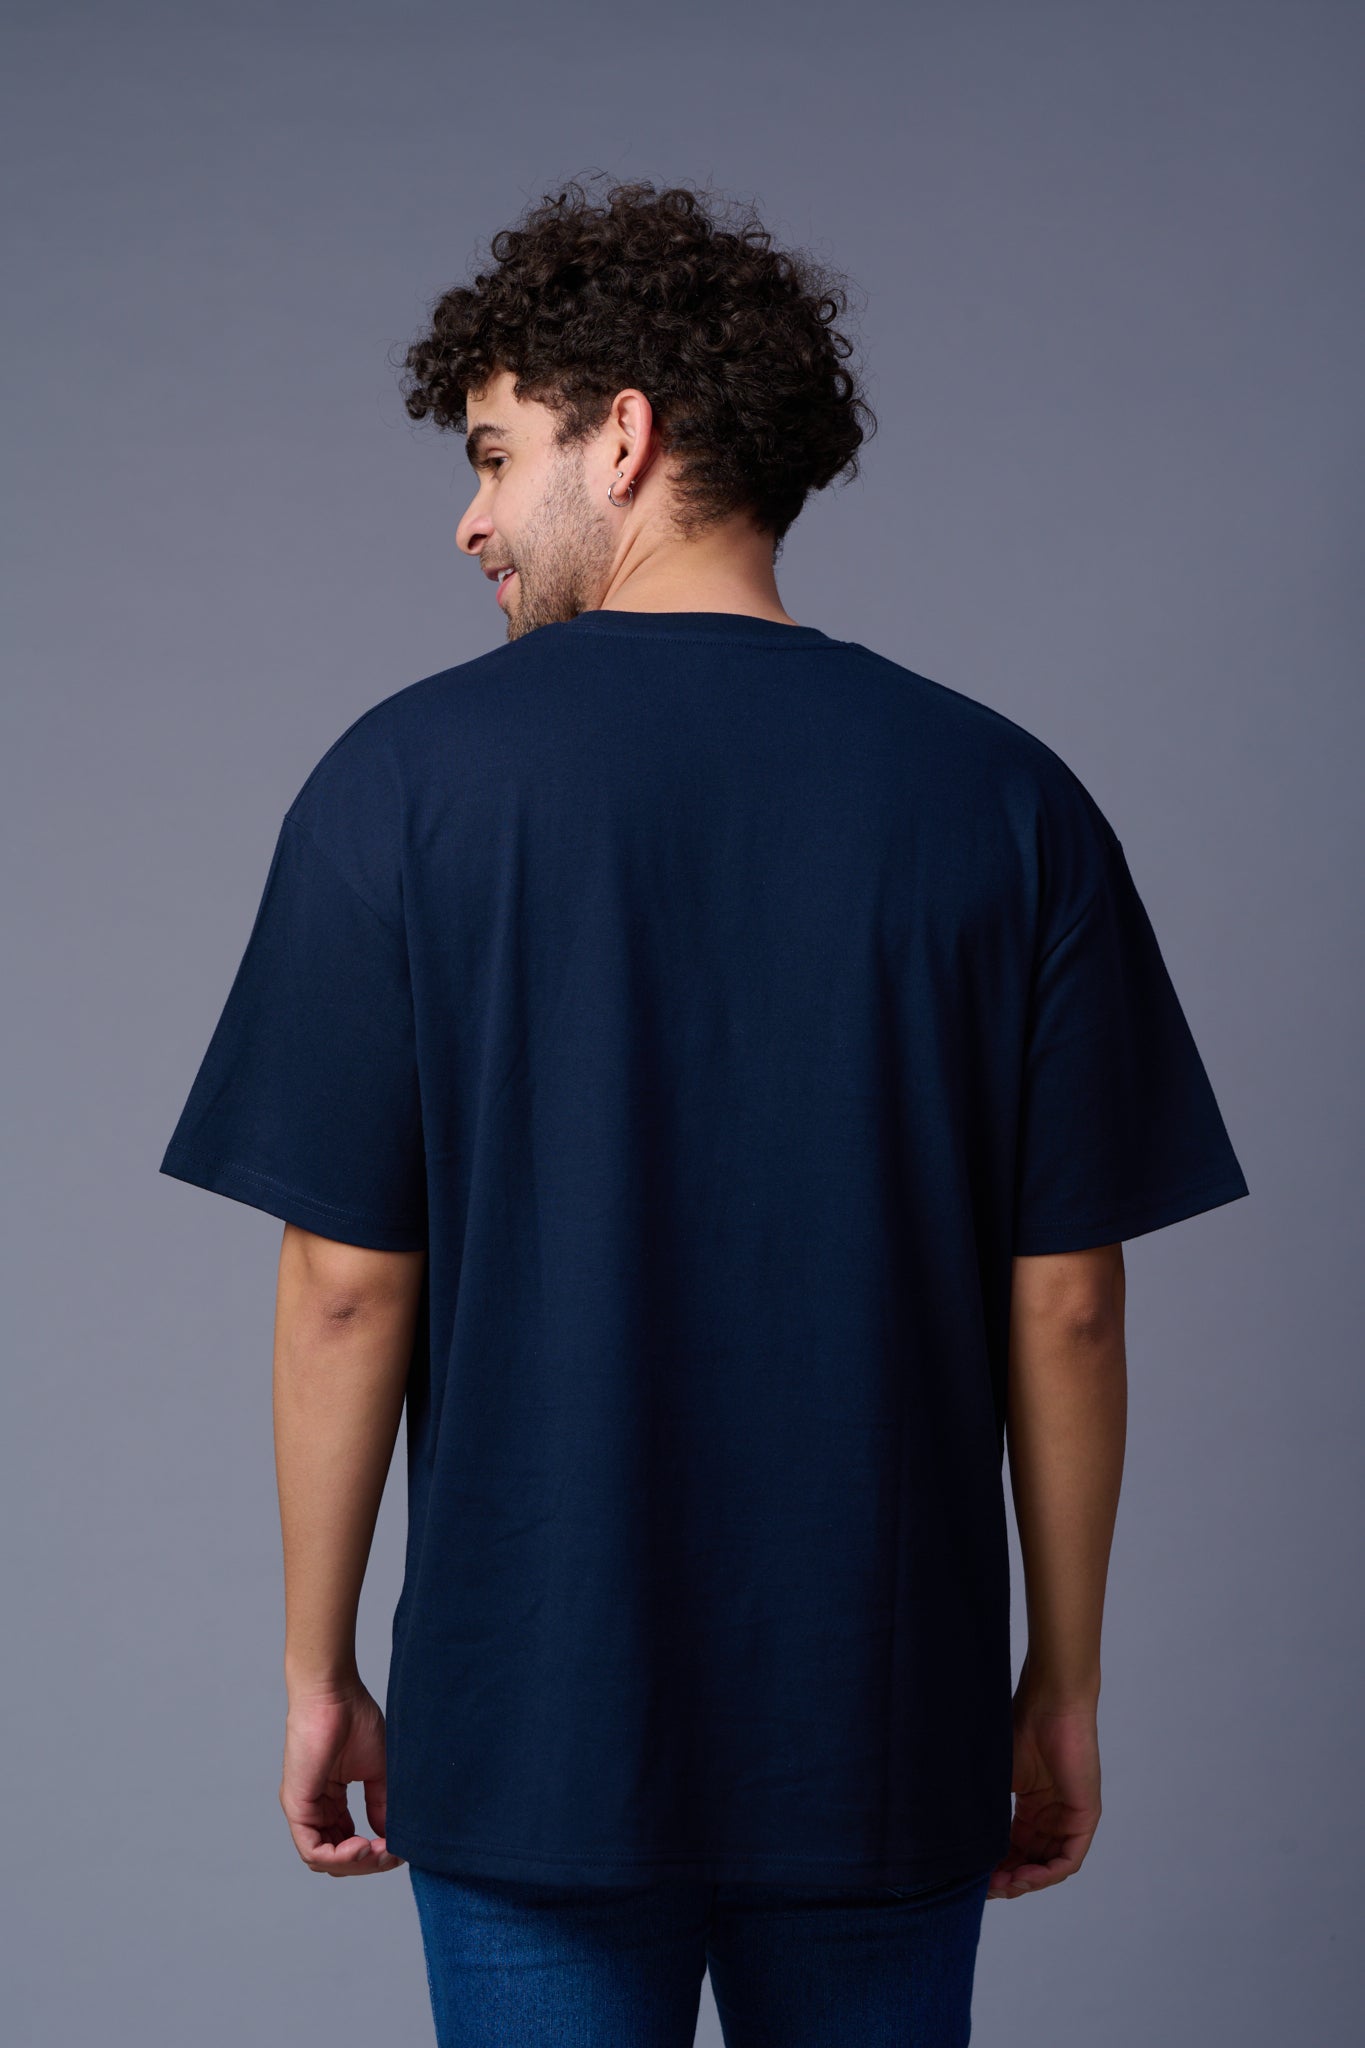 Go devil With Flower Printed Navy Blue Oversized T-Shirt for Men